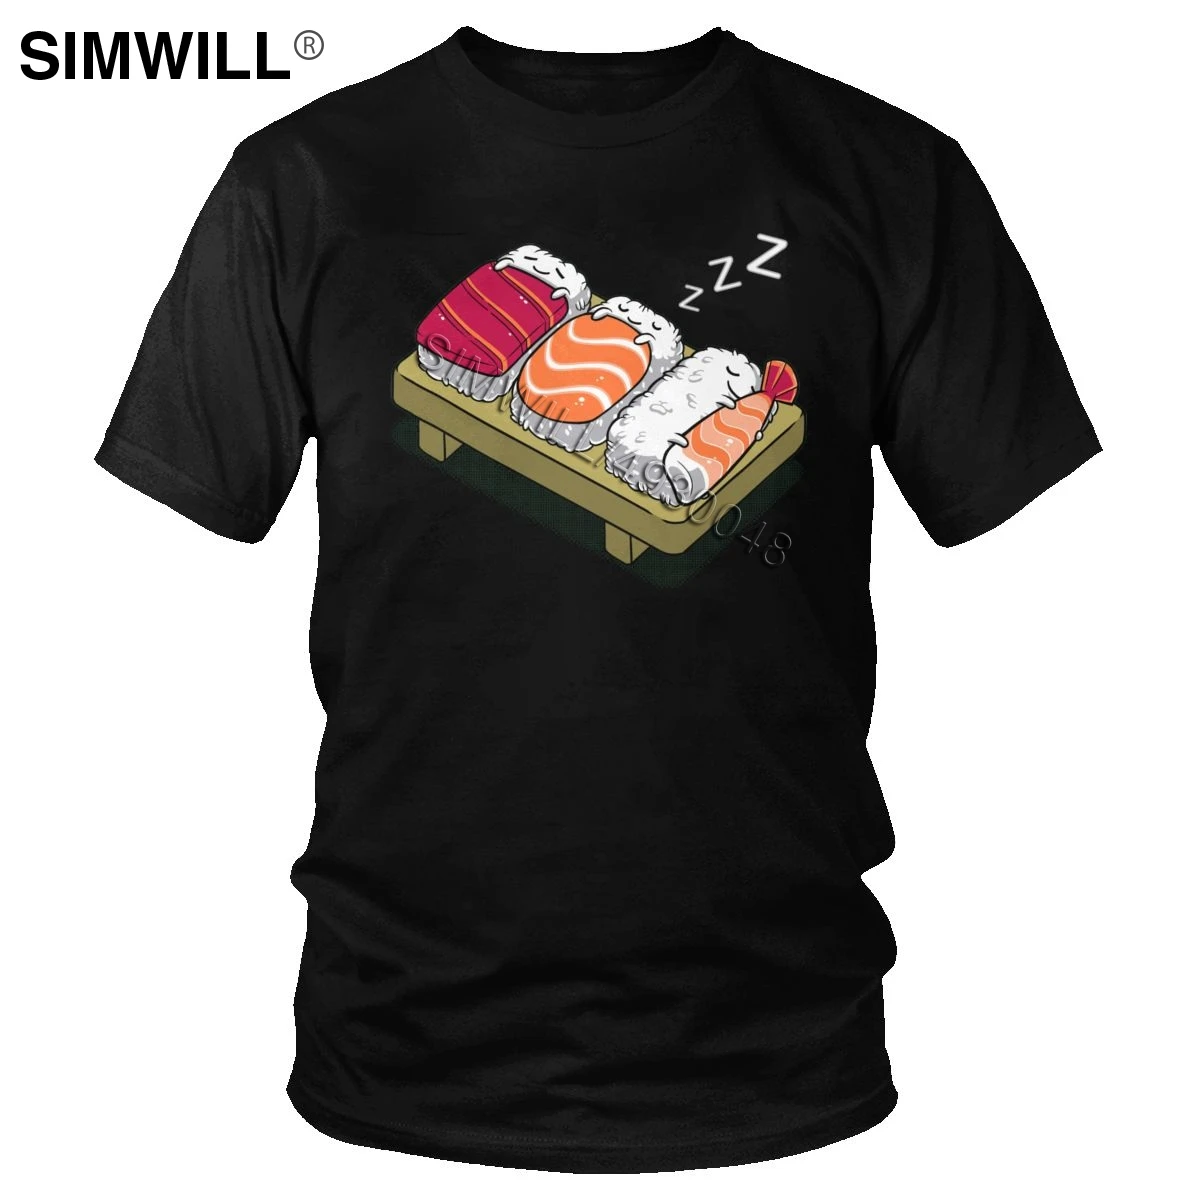 

Суши футболка для мужчин хлопок эко японской кухни, футболка с короткими рукавами, футболка с круглым воротником принтовые тройники класси...